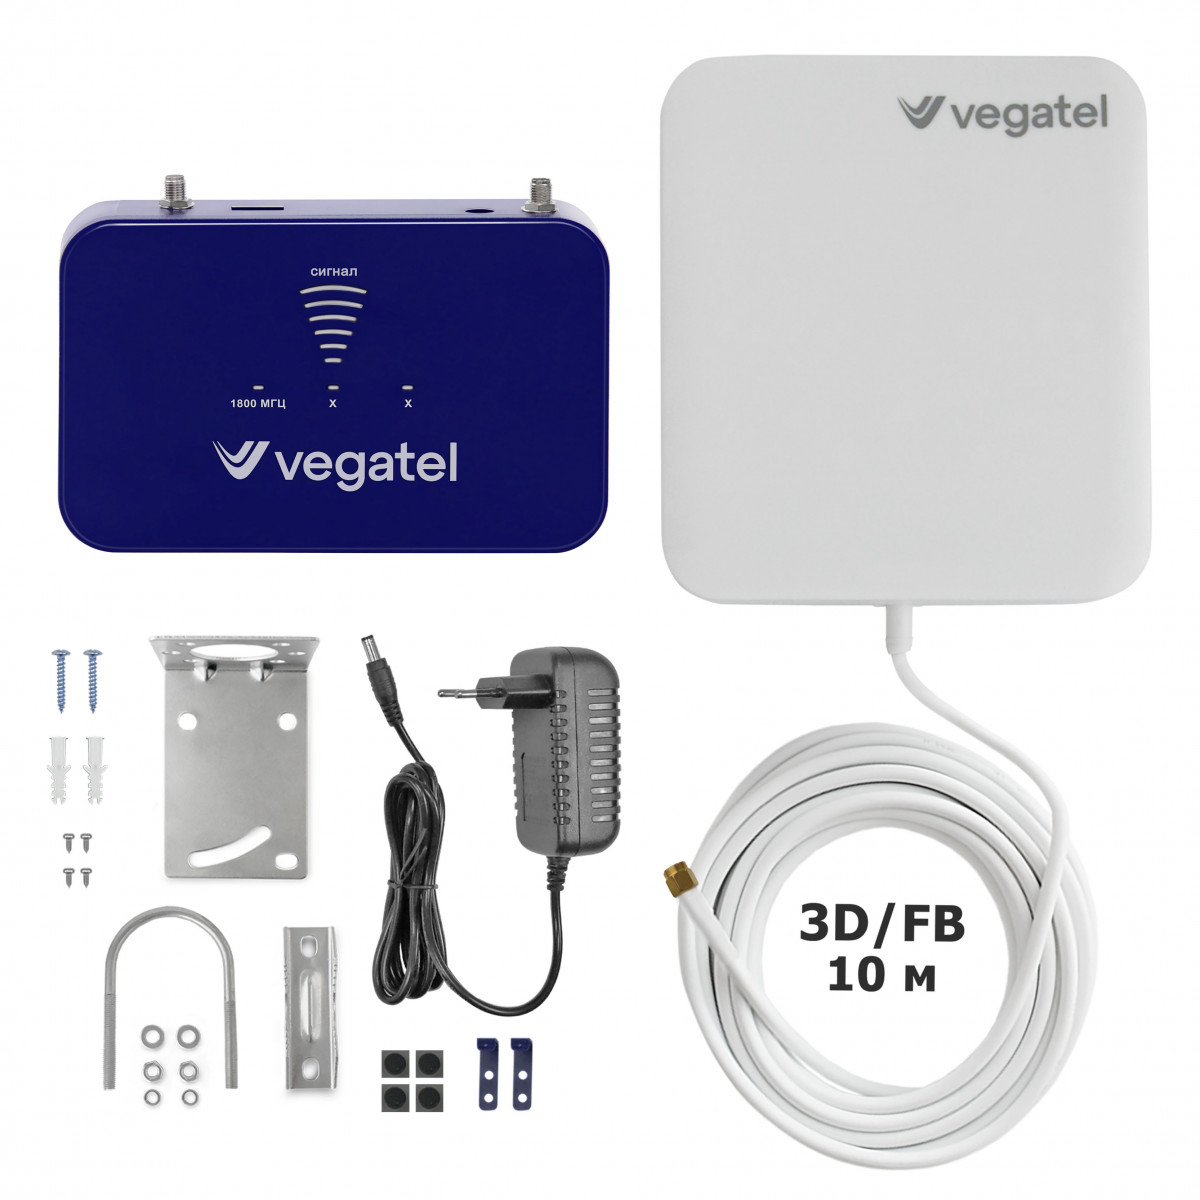 Детальное изображение товара "Комплект усиления сотовой связи Vegatel PL-1800" из каталога оборудования Антенна76